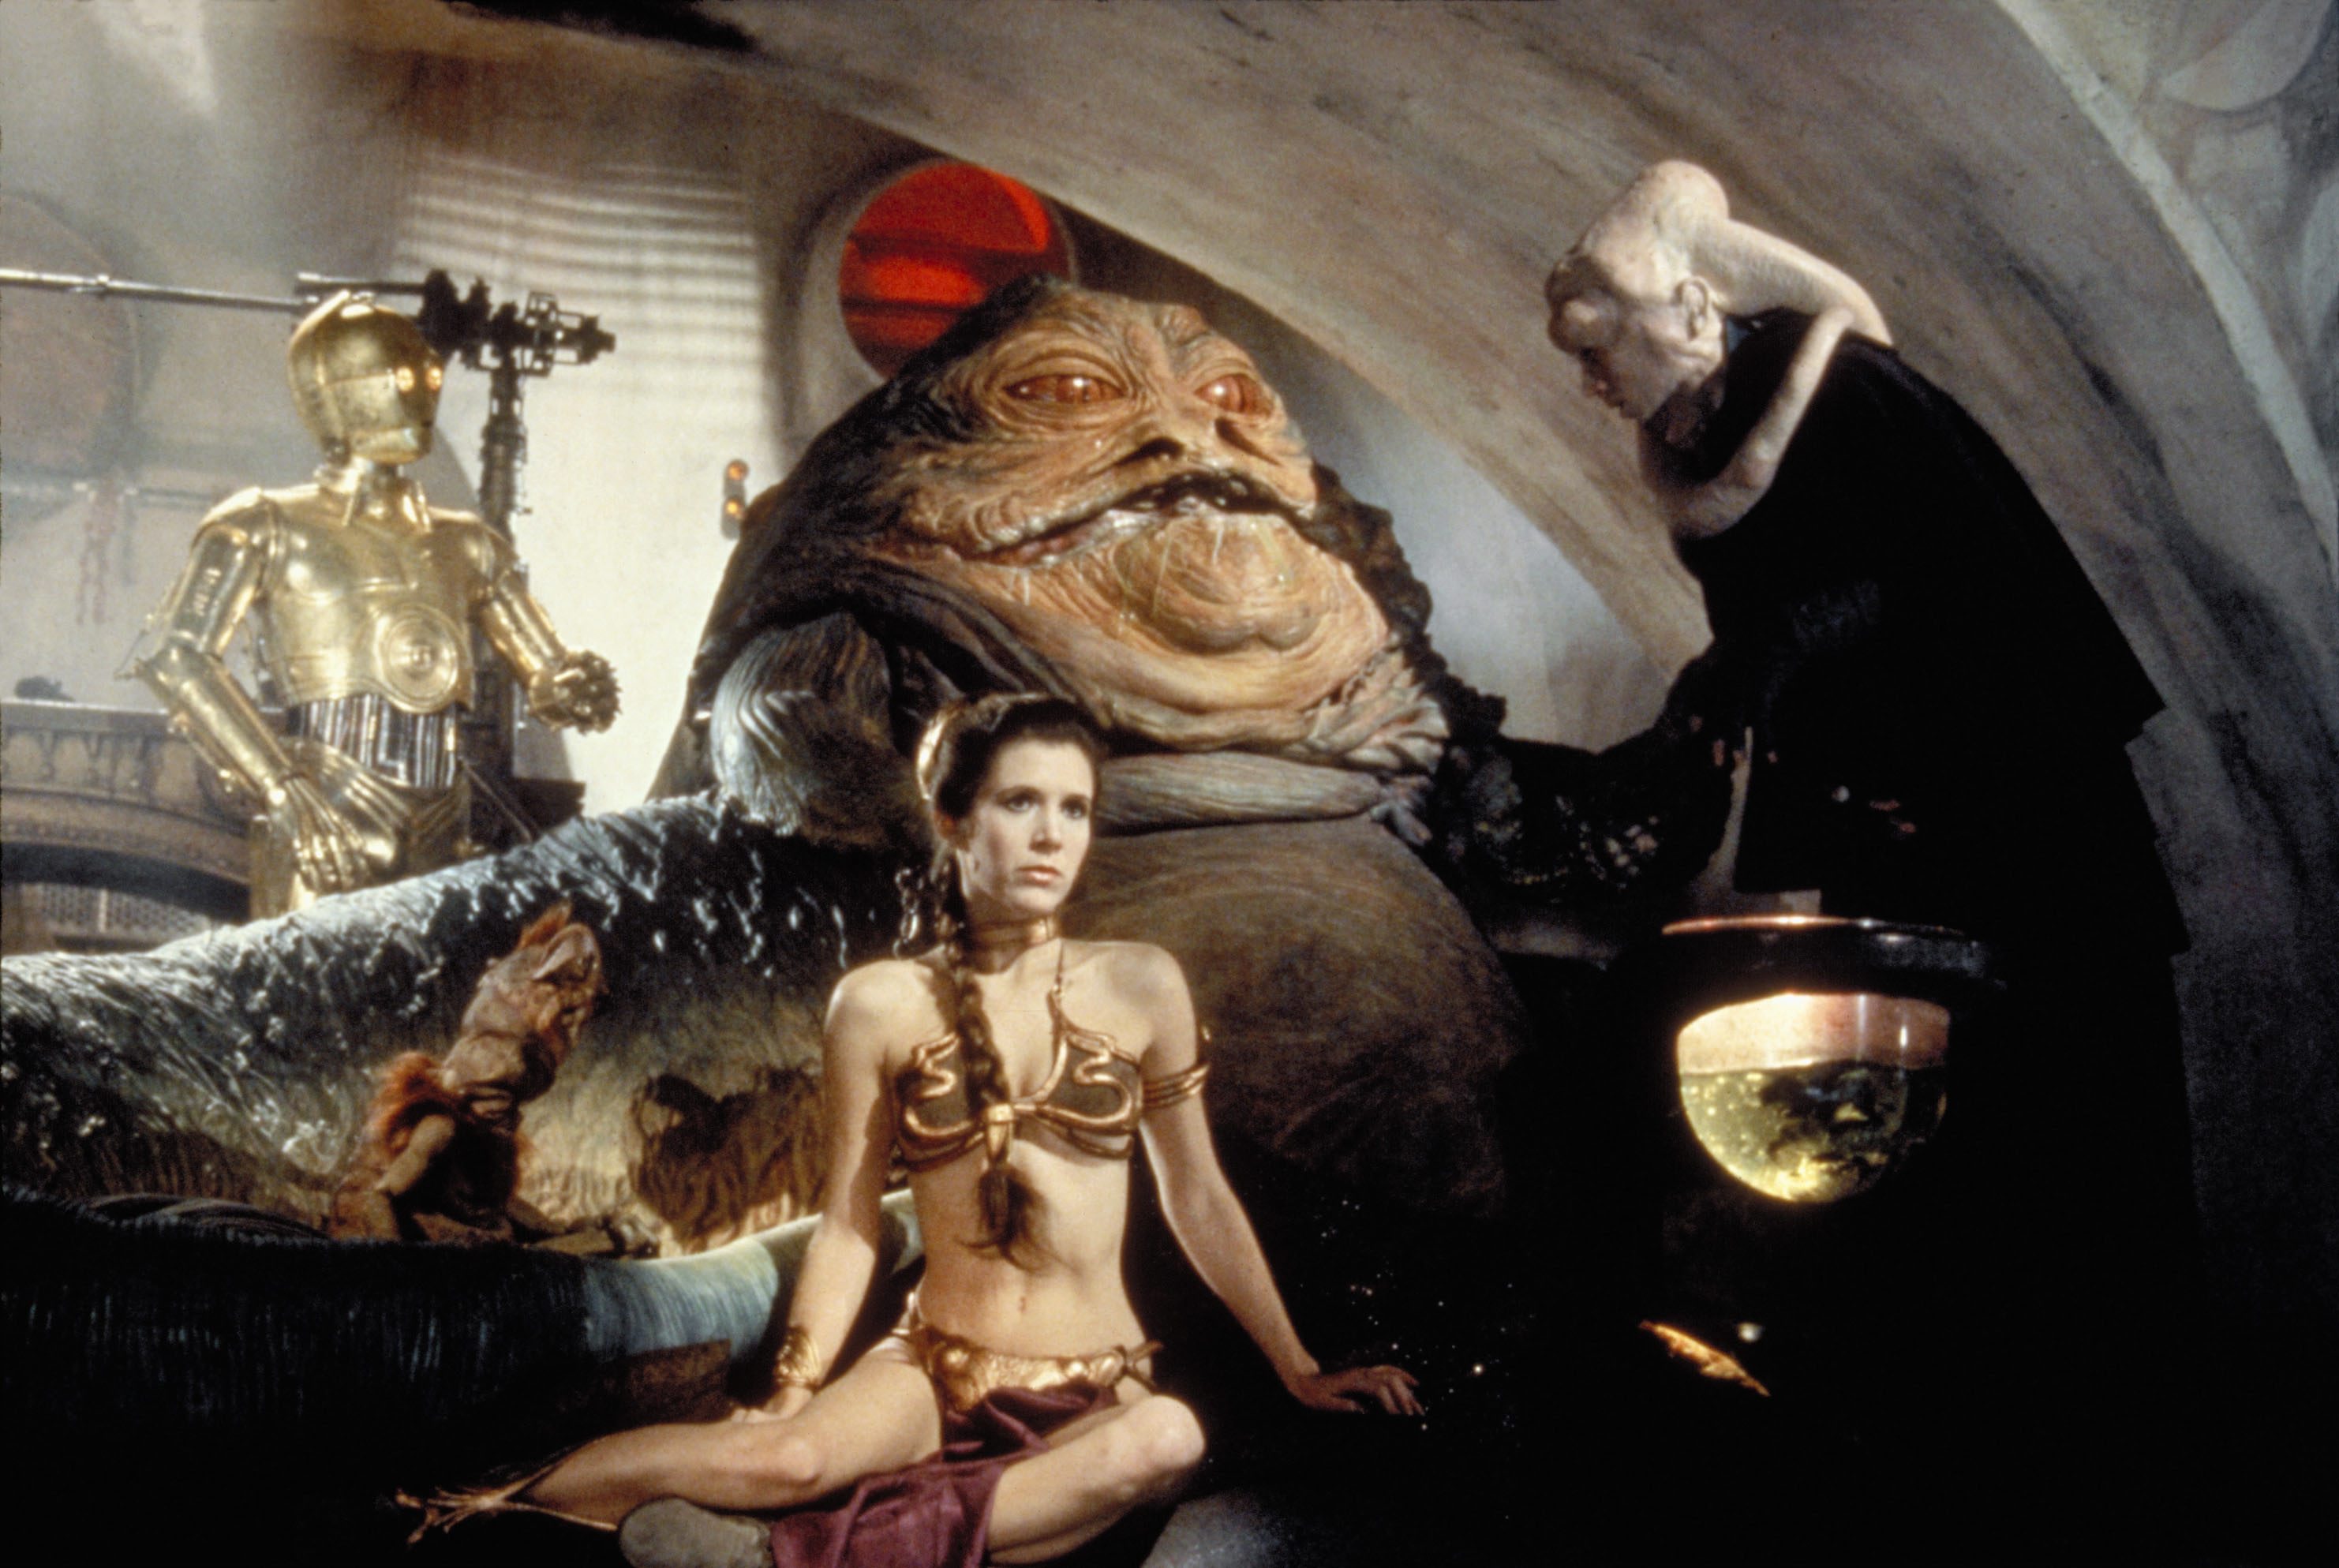 Star Wars-karaktären Jabba the Hutt satt rakt framför honom.